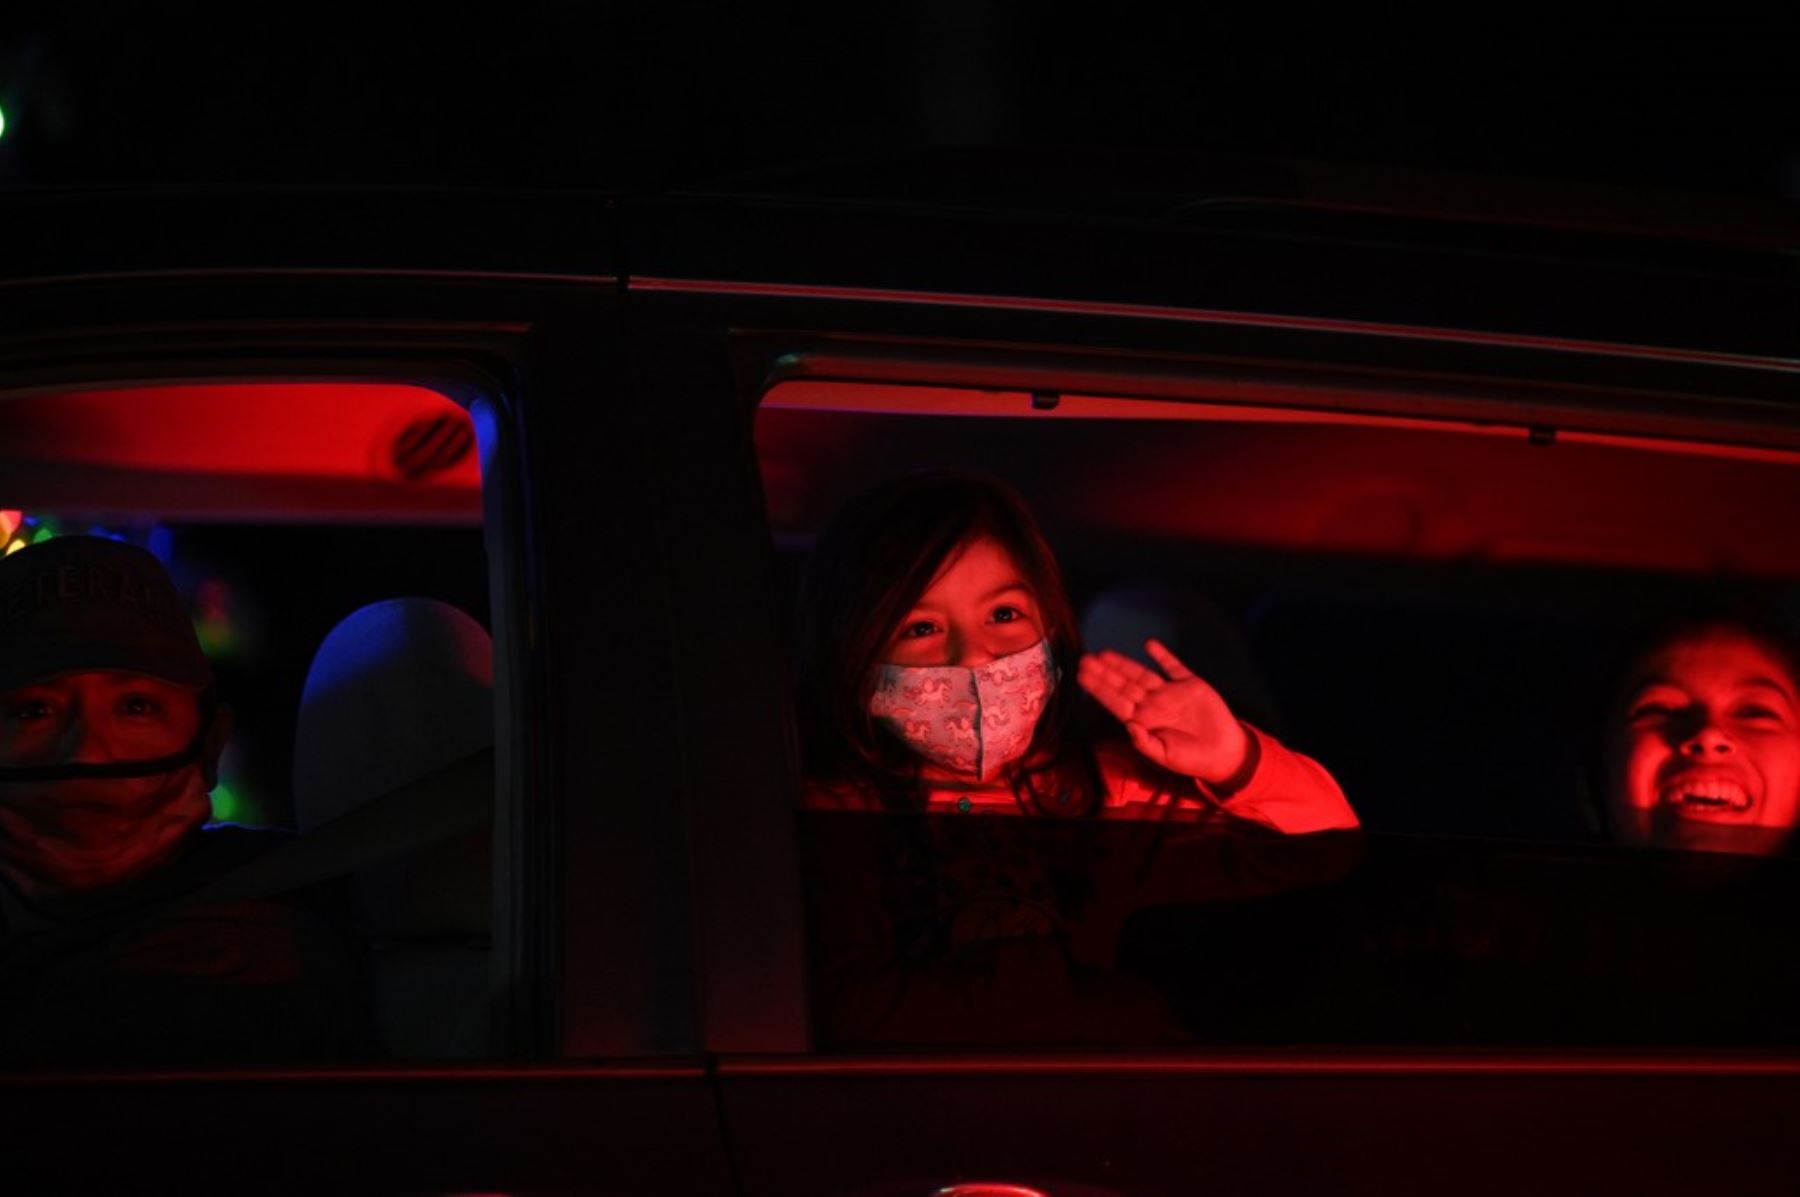 Personas en automóviles visitan el Dodgers Holiday Festival, un recorrido por la temporada navideña de manera segura en medio de la pandemia de coronavirus, en los Ángeles, California. Foto: AFP